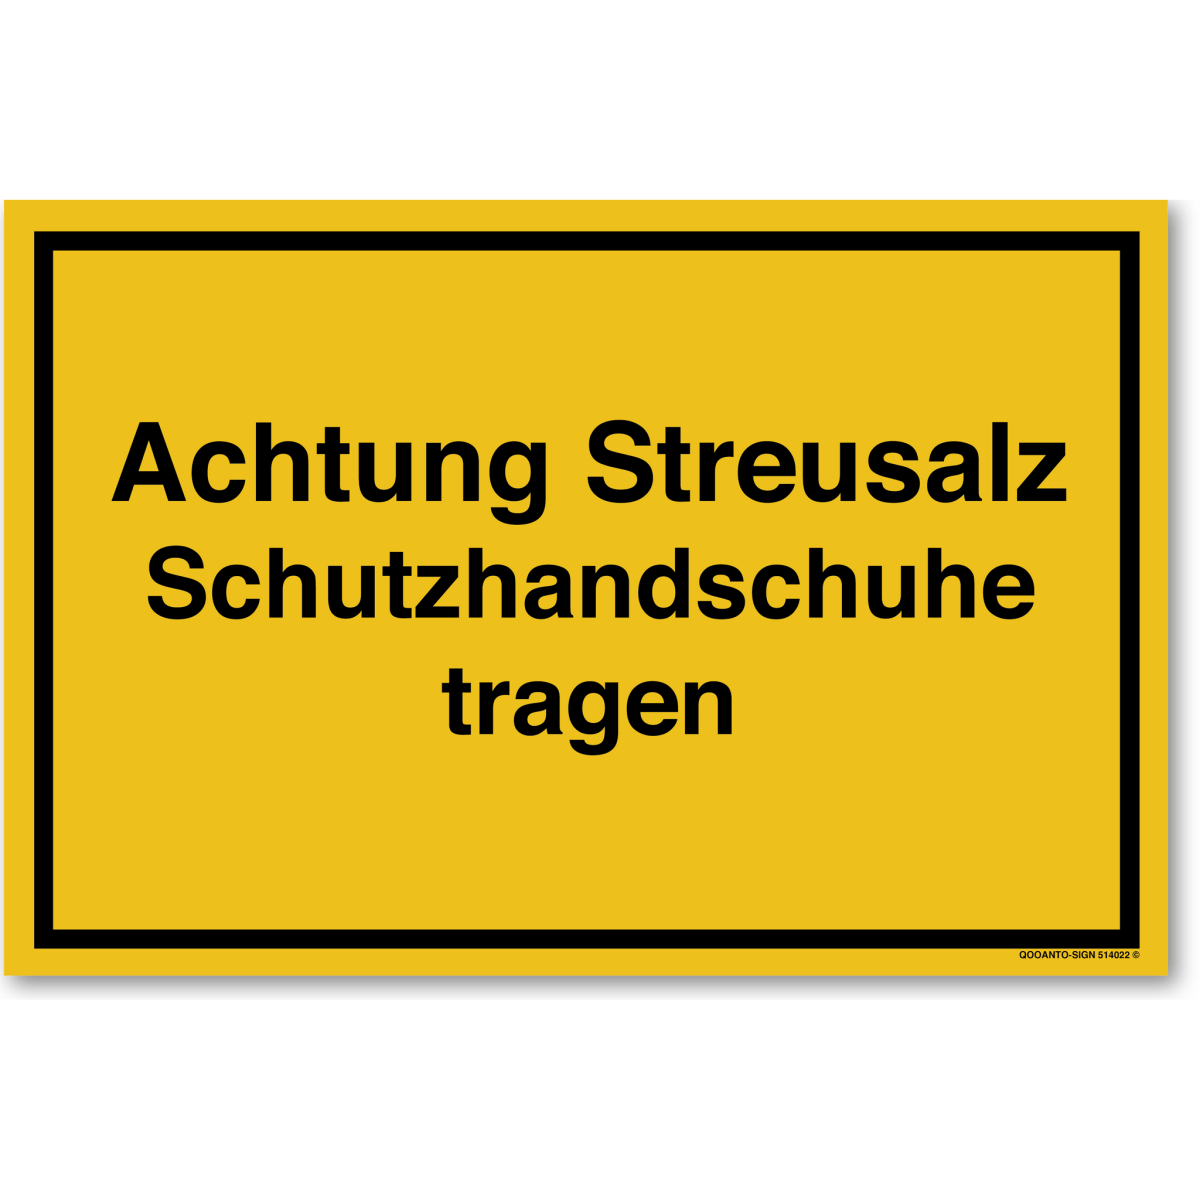 Achtung Streusalz Schutzhandschuhe Tragen Schild aus Alu-Verbund mit UV-Schutz - QOOANTO-SIGN